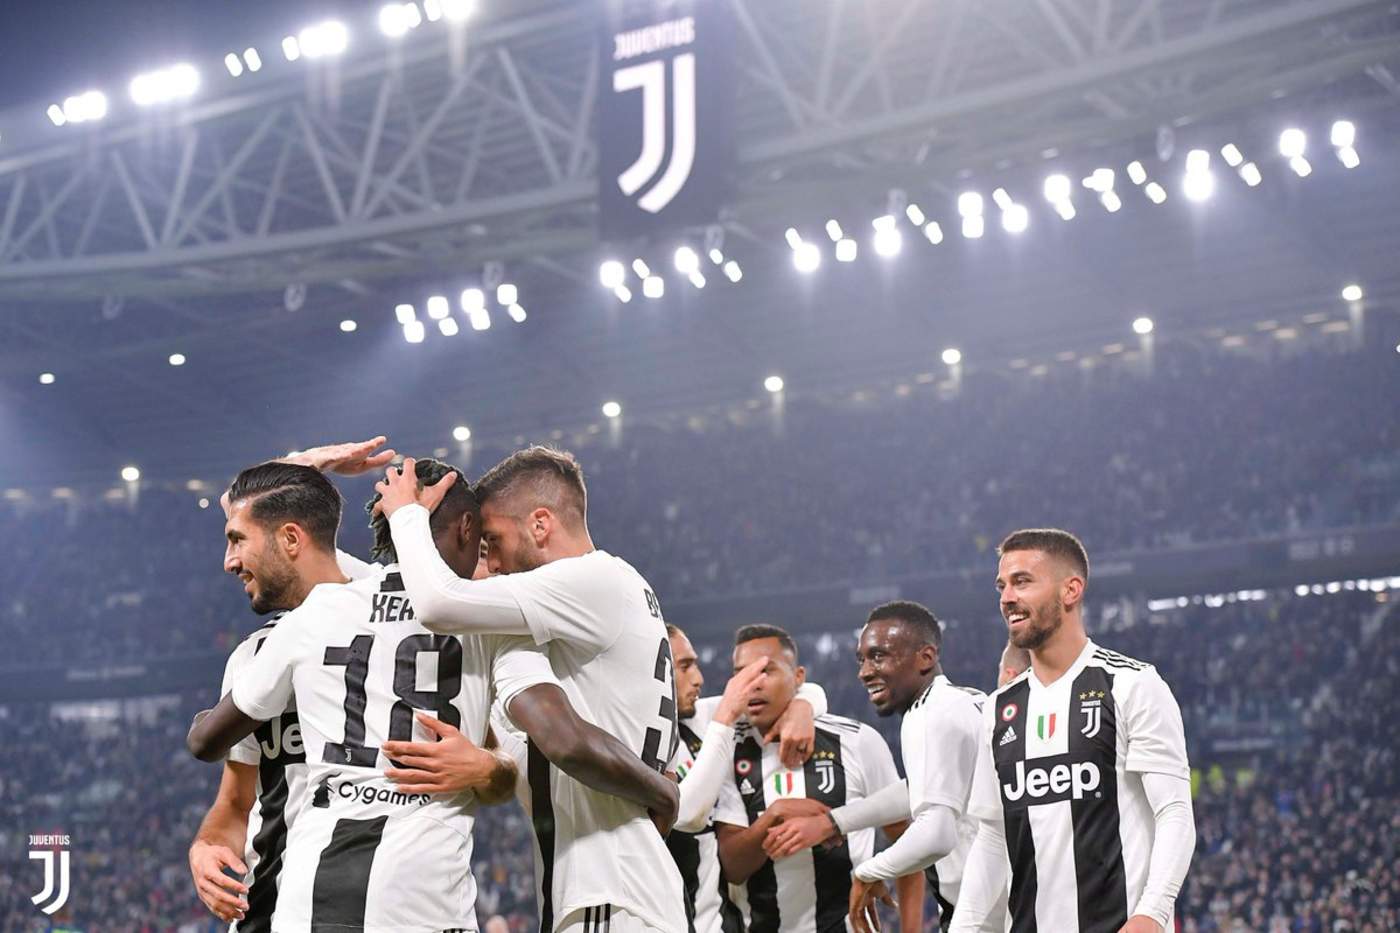 Jugadores de la Juventus festejan tras anotar un gol ante Udinese. (Especial)